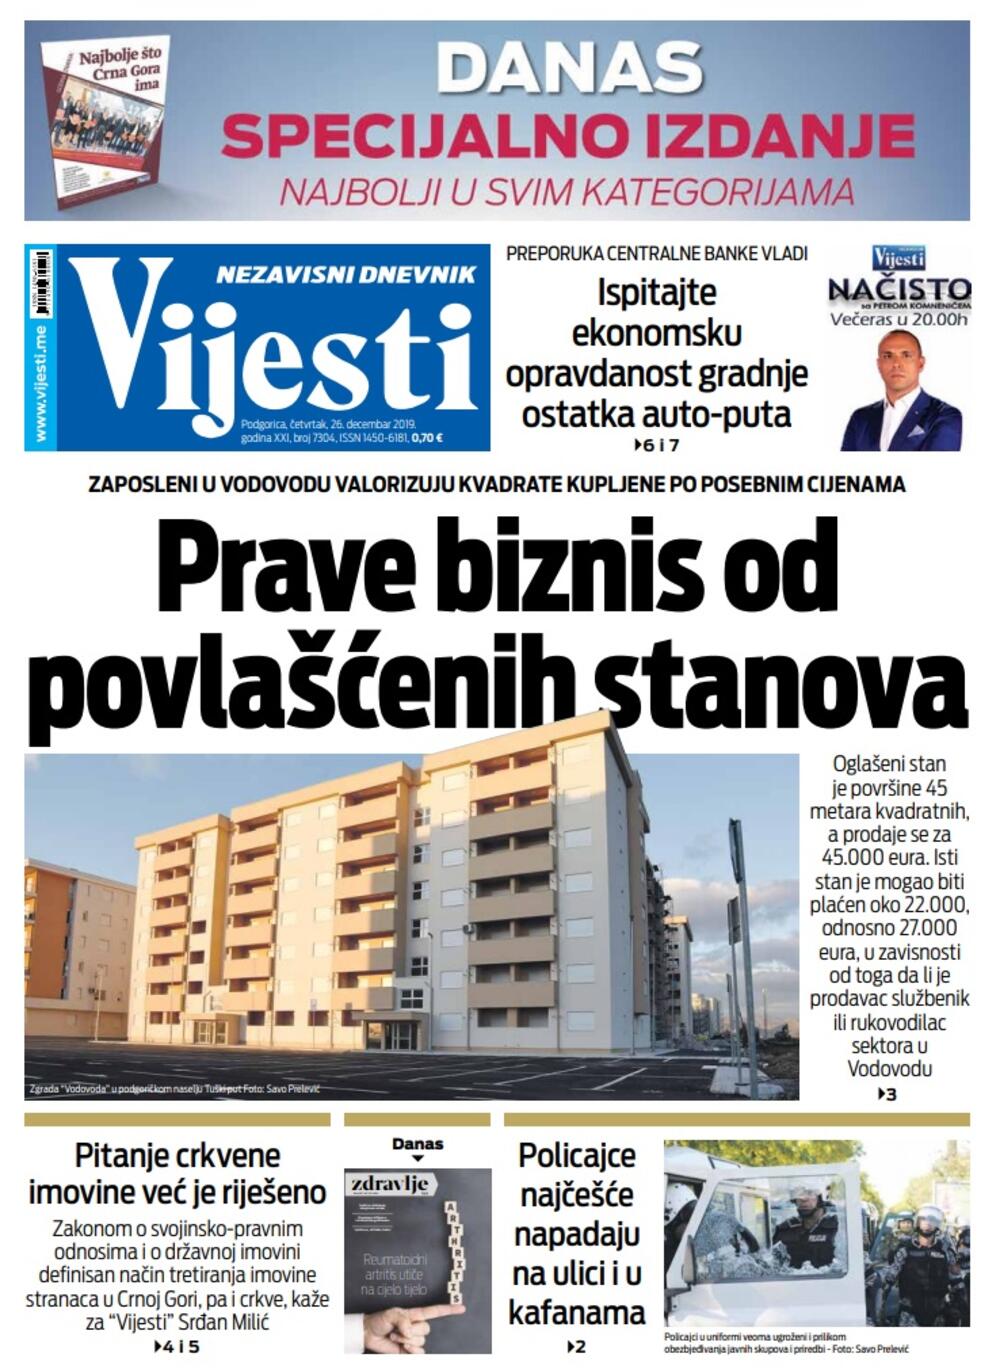 Naslovna strana "Vijesti" za 26. decembar 2019. godine, Foto: "Vijesti"